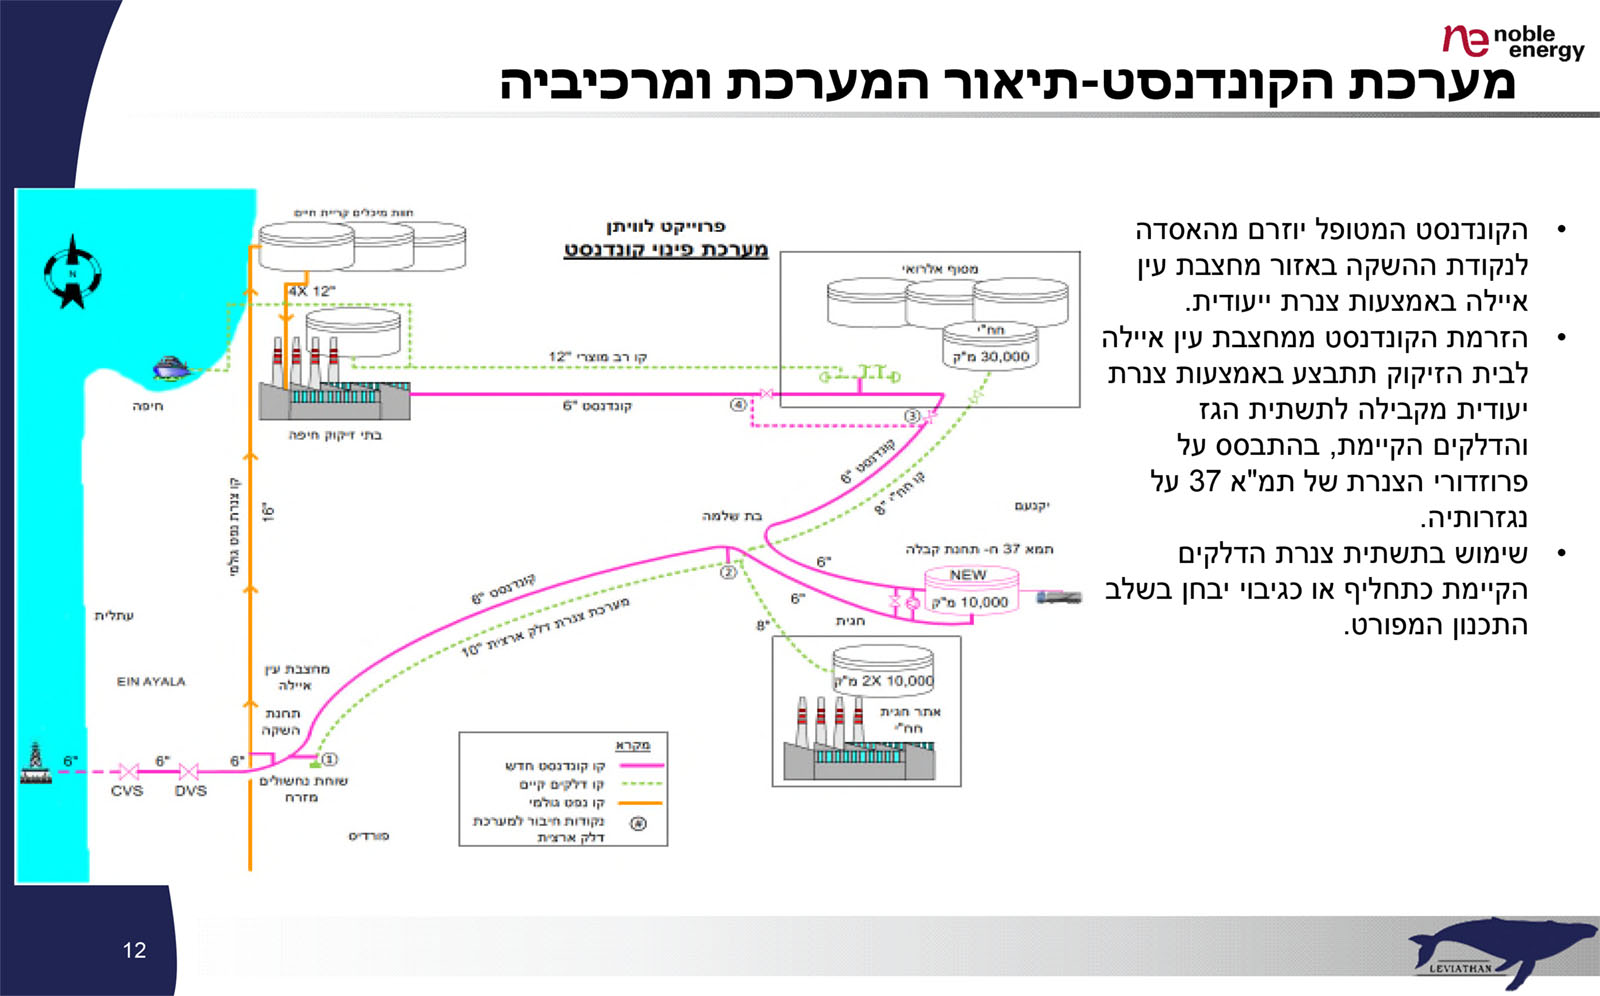 מערכת הקונדנסט &#8211; תיאור המערכת ומרכיביה, מתוך המסמך העקרוני של נובל אנרג'י לרשות רישוי מחוזית חיפה, מאי 2016